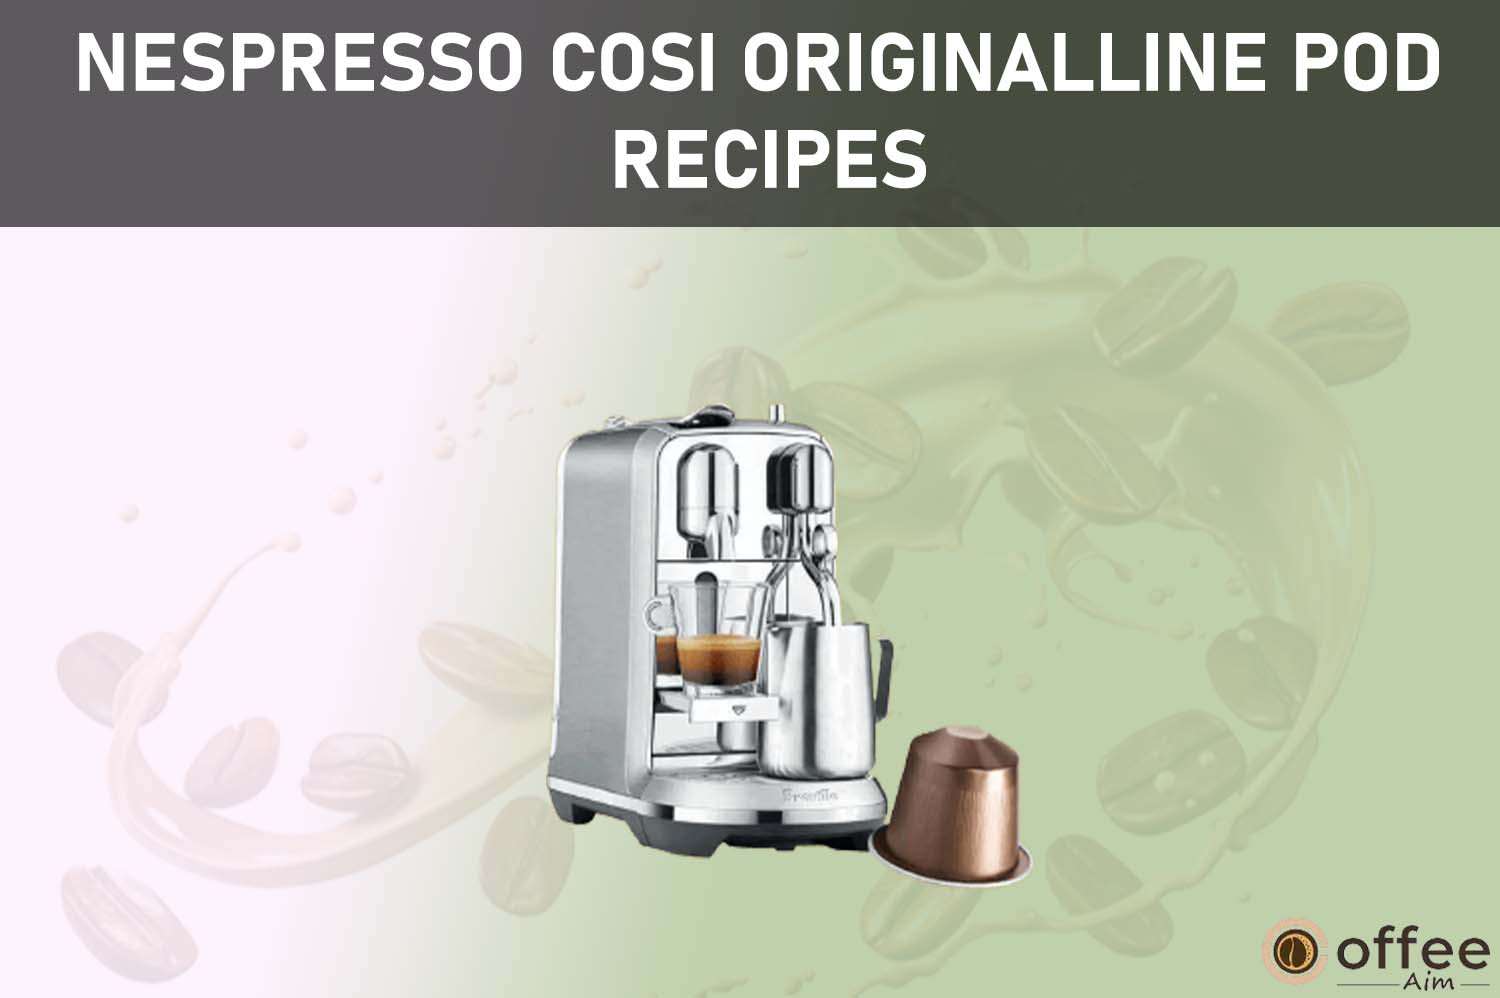 Featured image for the article "Nespresso Cosi OriginalLine Pod Recipes"